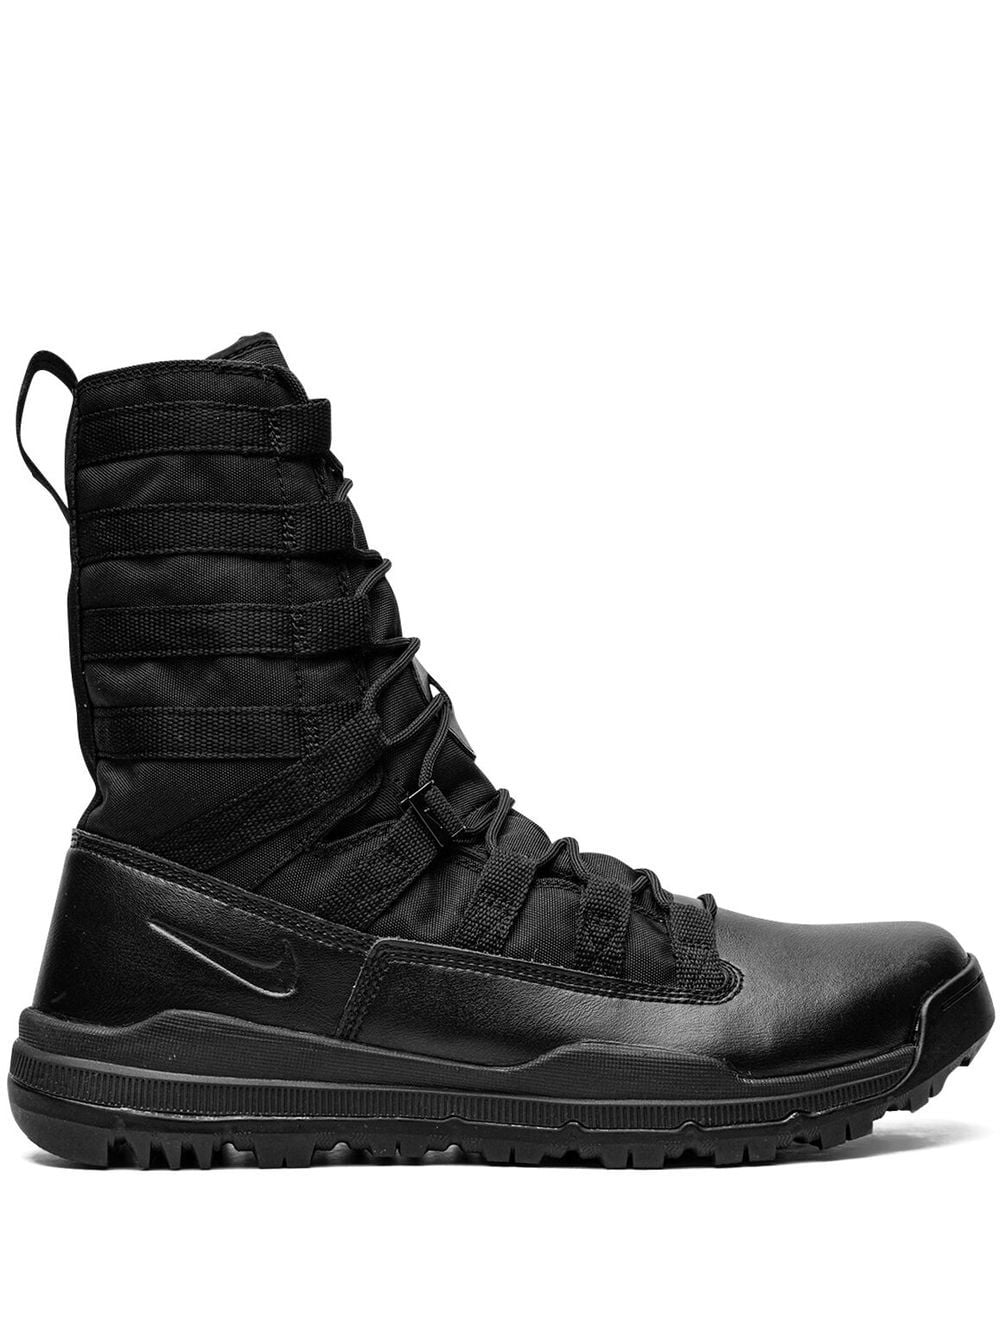 SFB Gen 2 8" boots